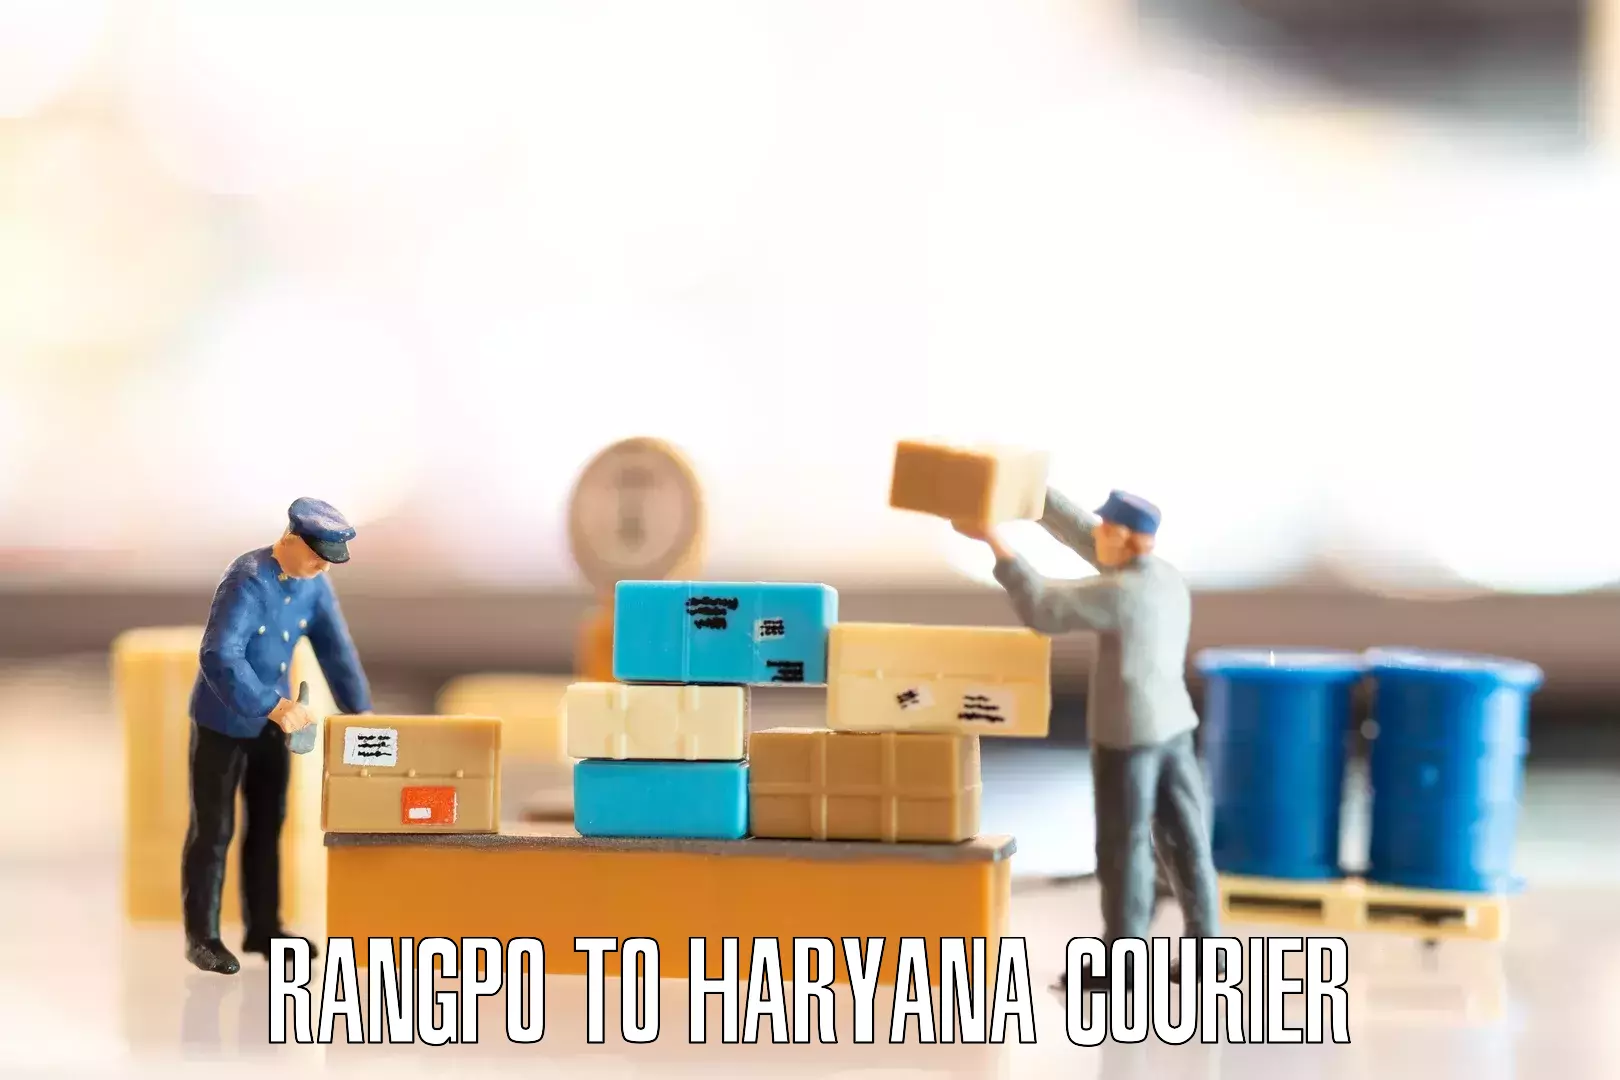 Specialized moving company Rangpo to Narwana